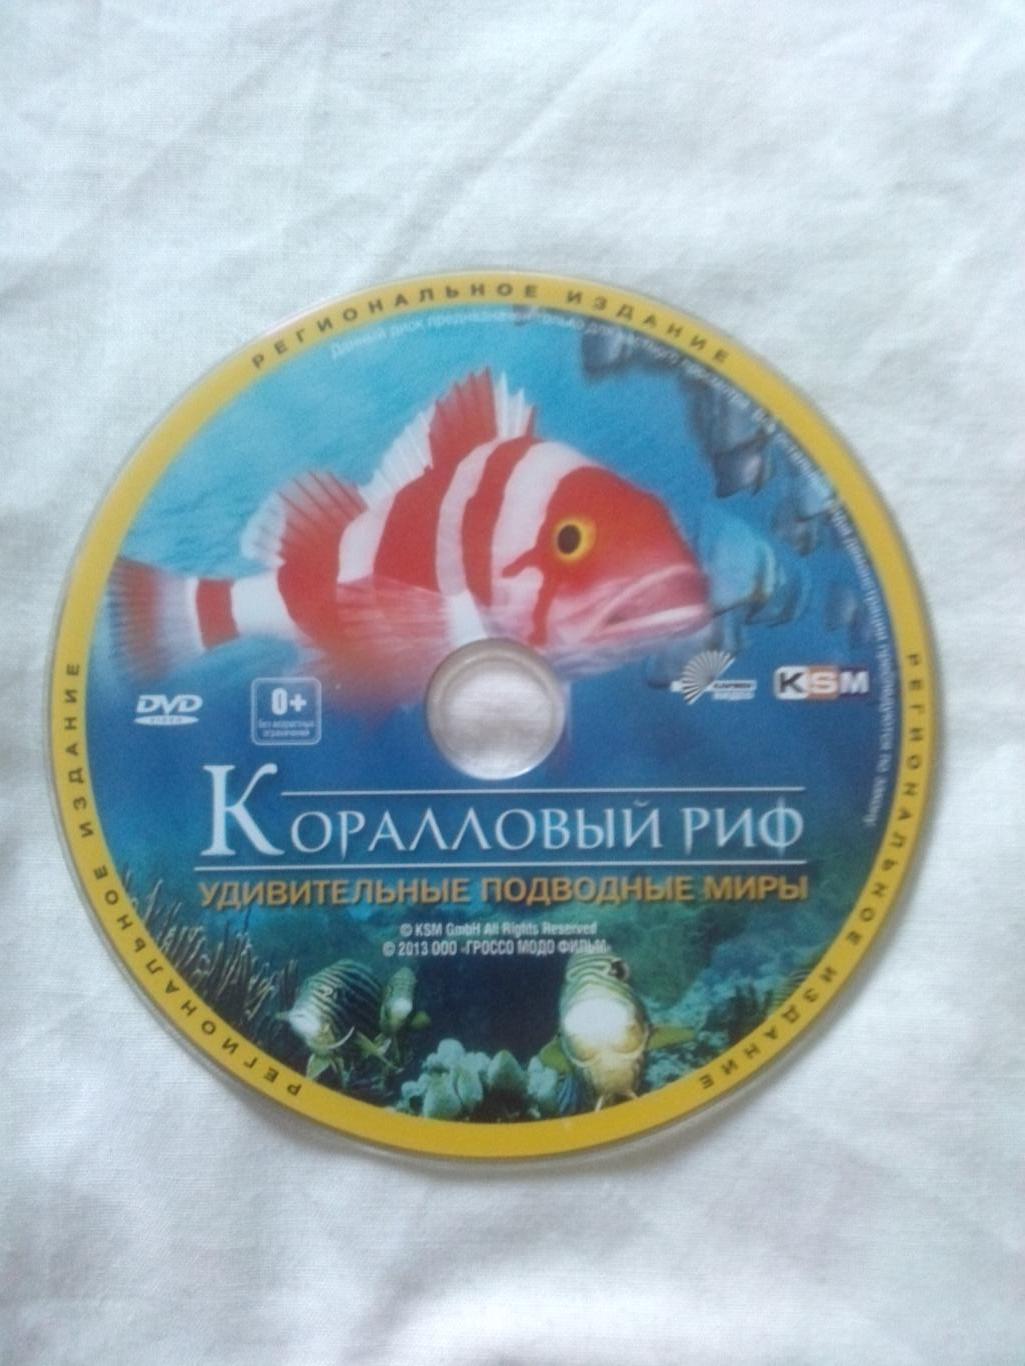 DVD Discovery : Коралловый риф - Удивительные подводные миры (Морская фауна) 3